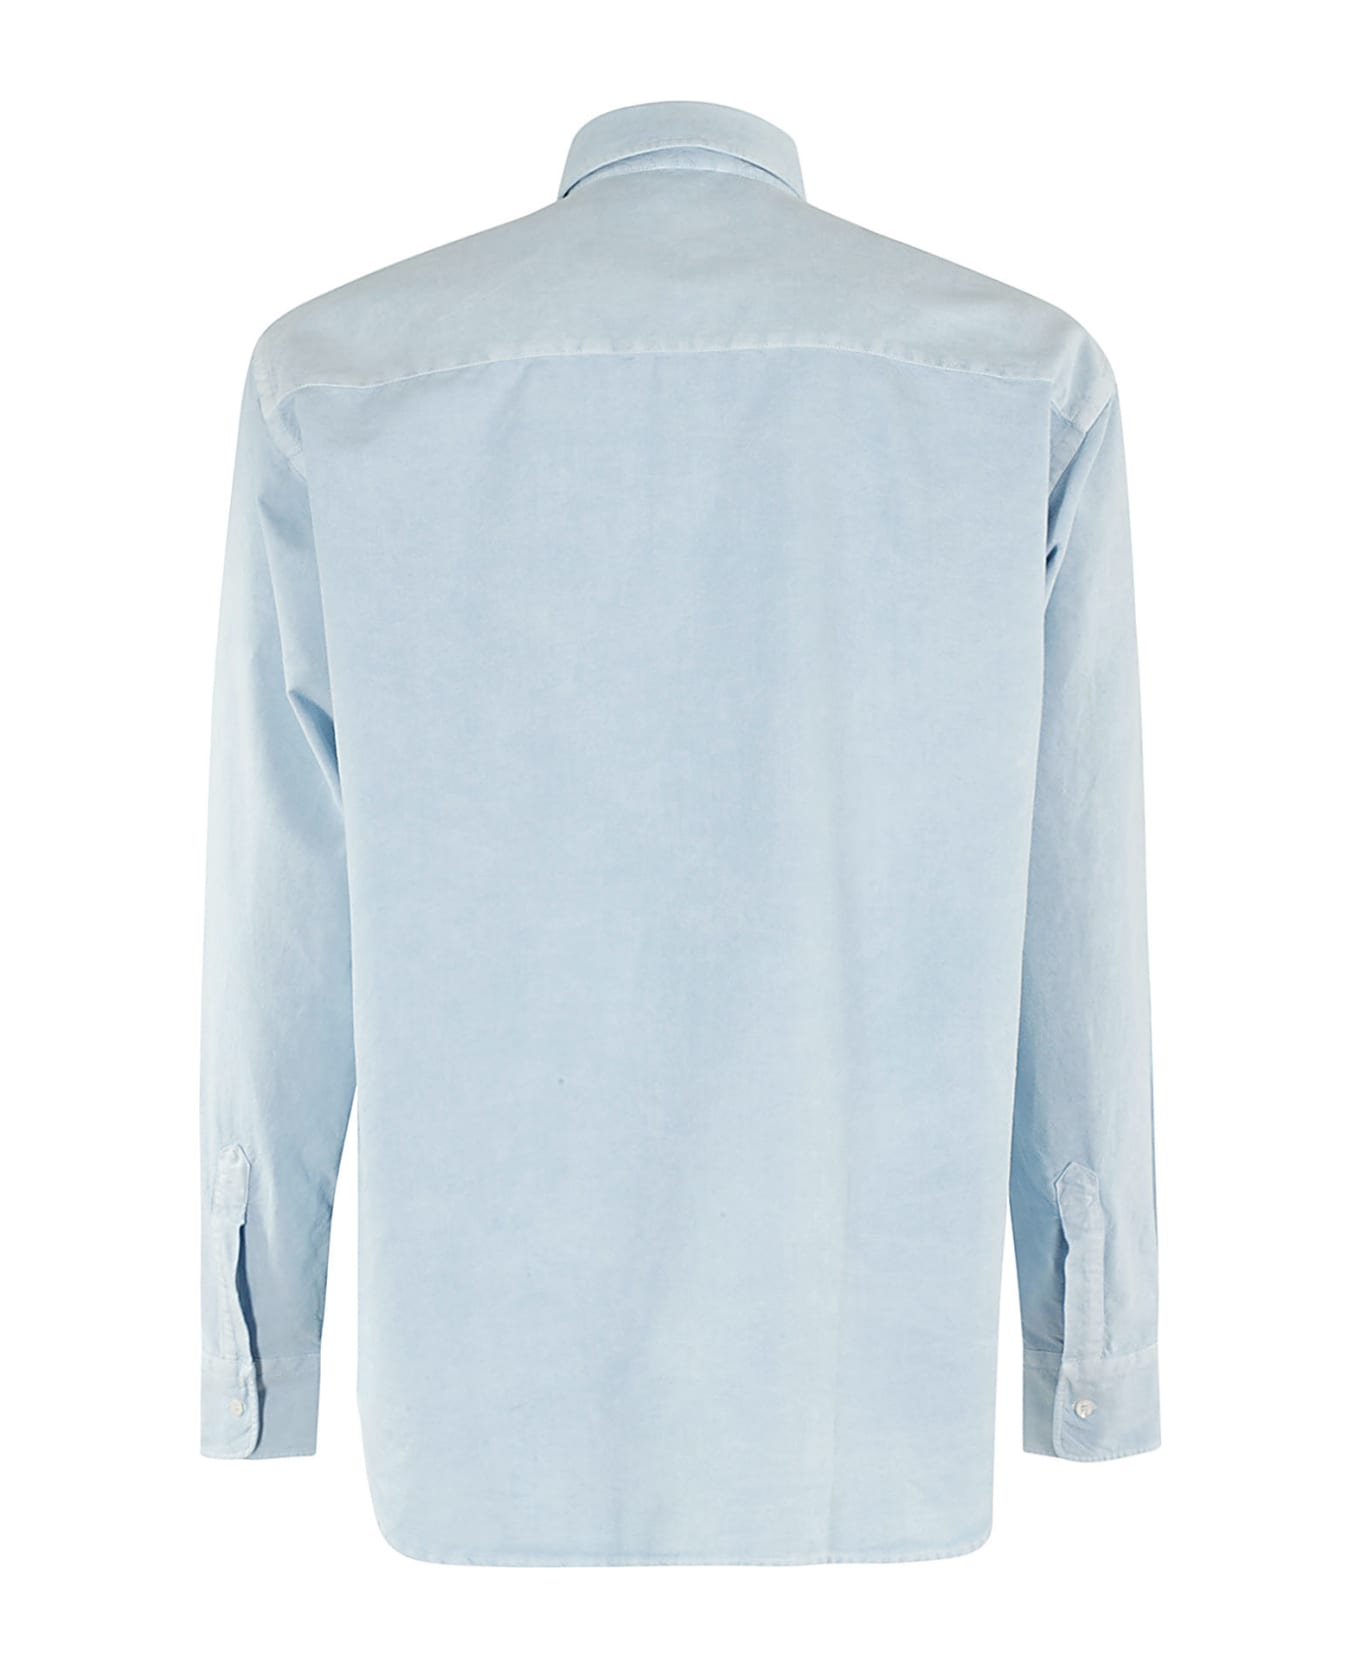 Aspesi Cotton Oxford Shirt - Azzurro シャツ